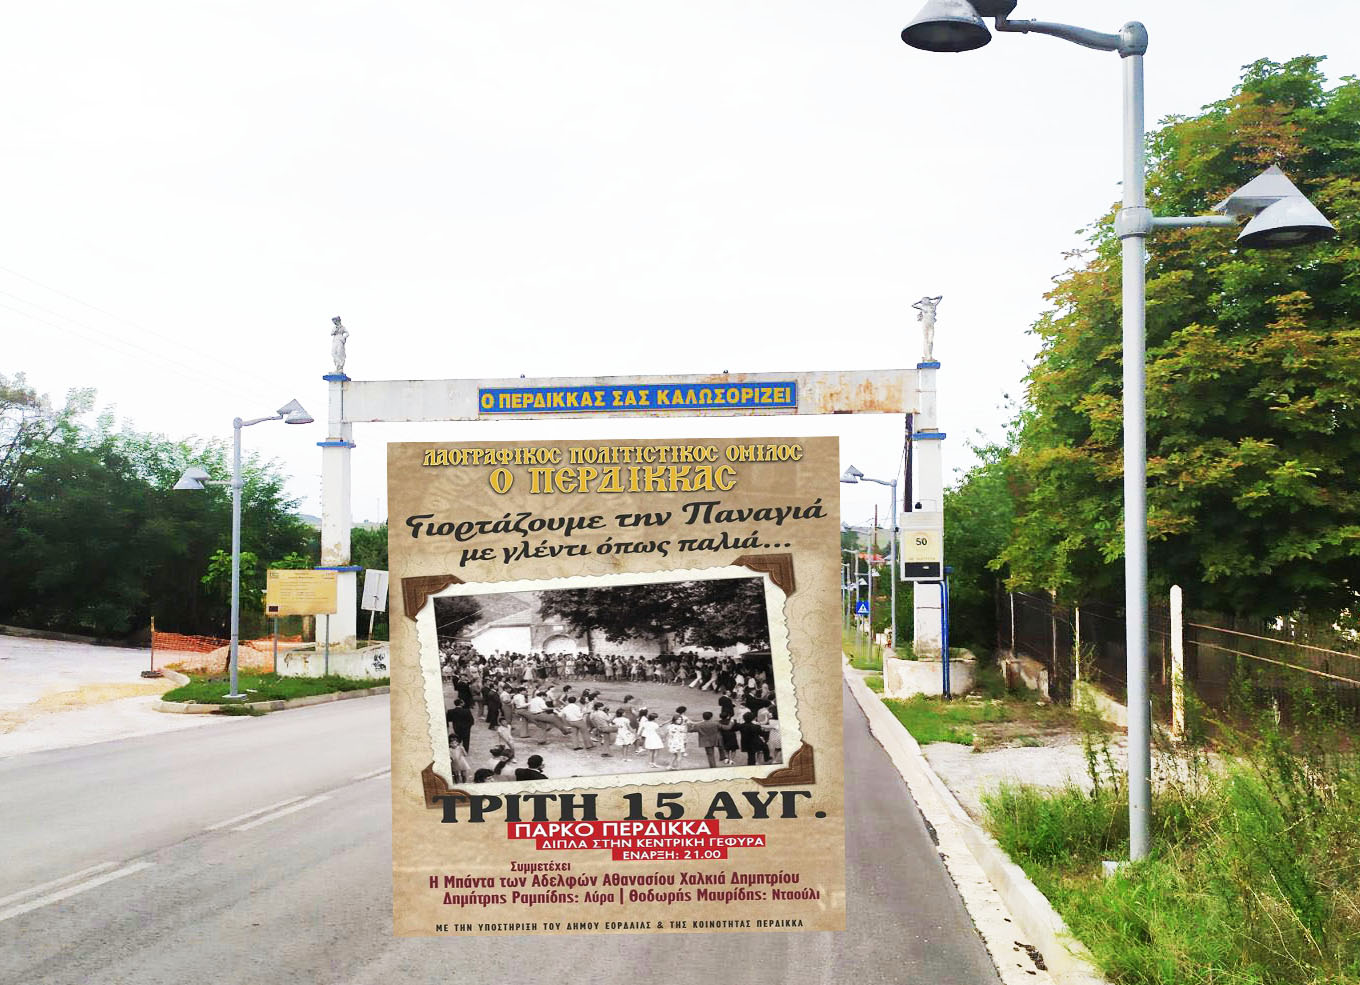 Εκδήλωση  του Λαογραφικού -Πολιτιστικού Συλλόγου Περδίκκα στις 15  Αυγούστου